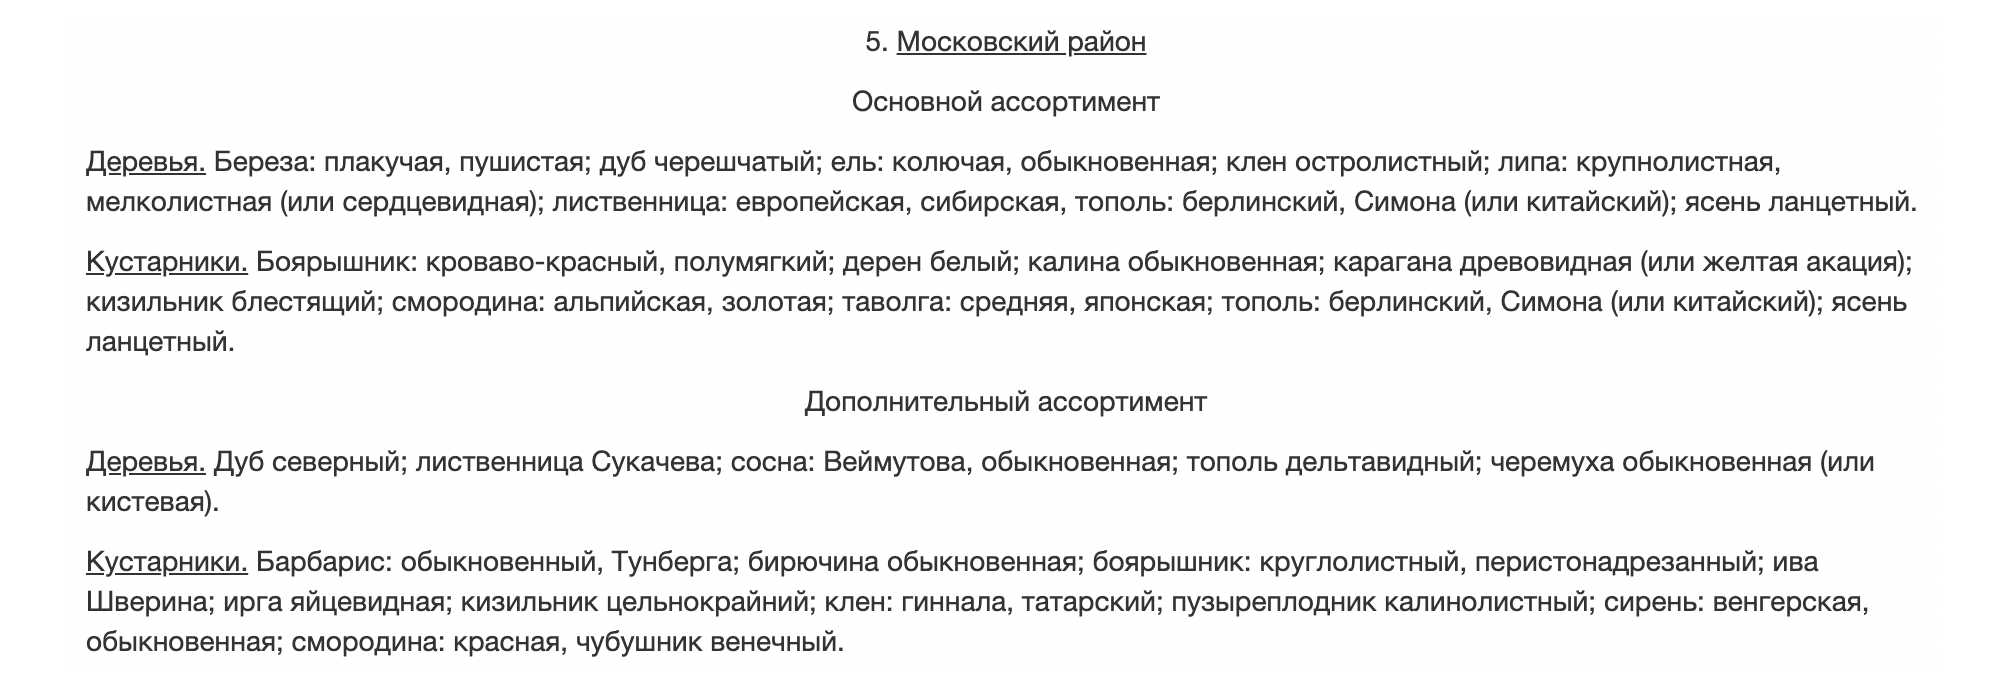 Такие деревья и кустарники перечислены в документе 1987 года для Московского района. Источник: znaytovar.ru